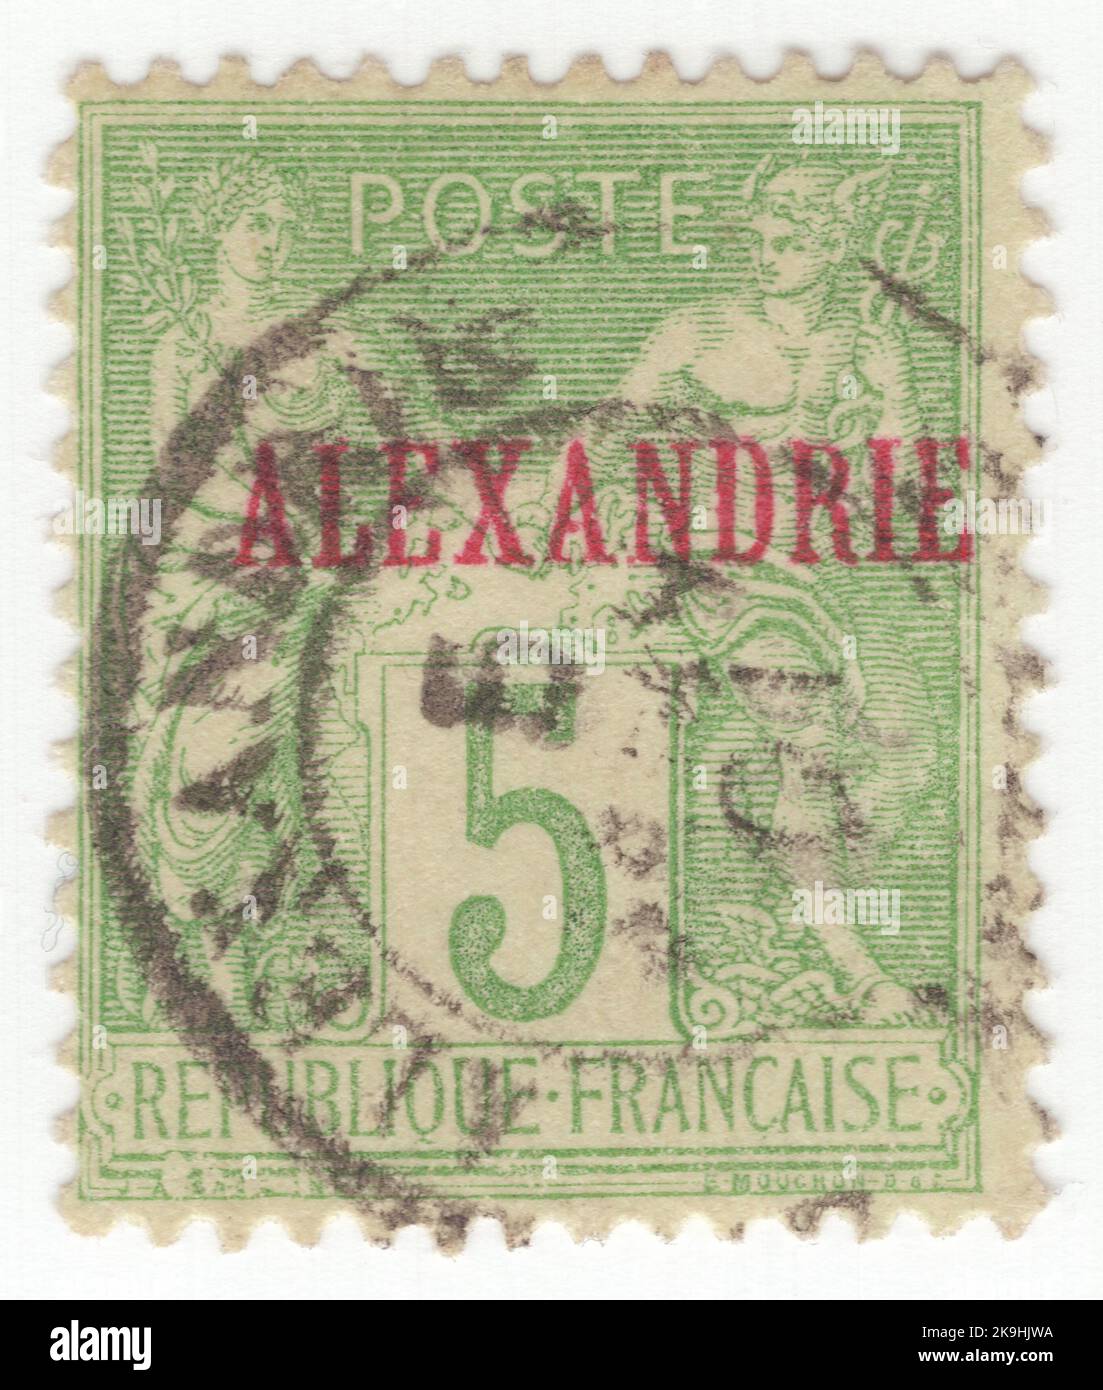 ALEXANDRIA - 1899: Eine gelb-grüne Briefmarke mit 5 Rappen, die Allegorie „Art Sage“ (auch als „Frieden und Handel“ bezeichnet) zeigt. Briefmarken Frankreichs überdruckt 'ALEXANDRIE' in Rot Stockfoto